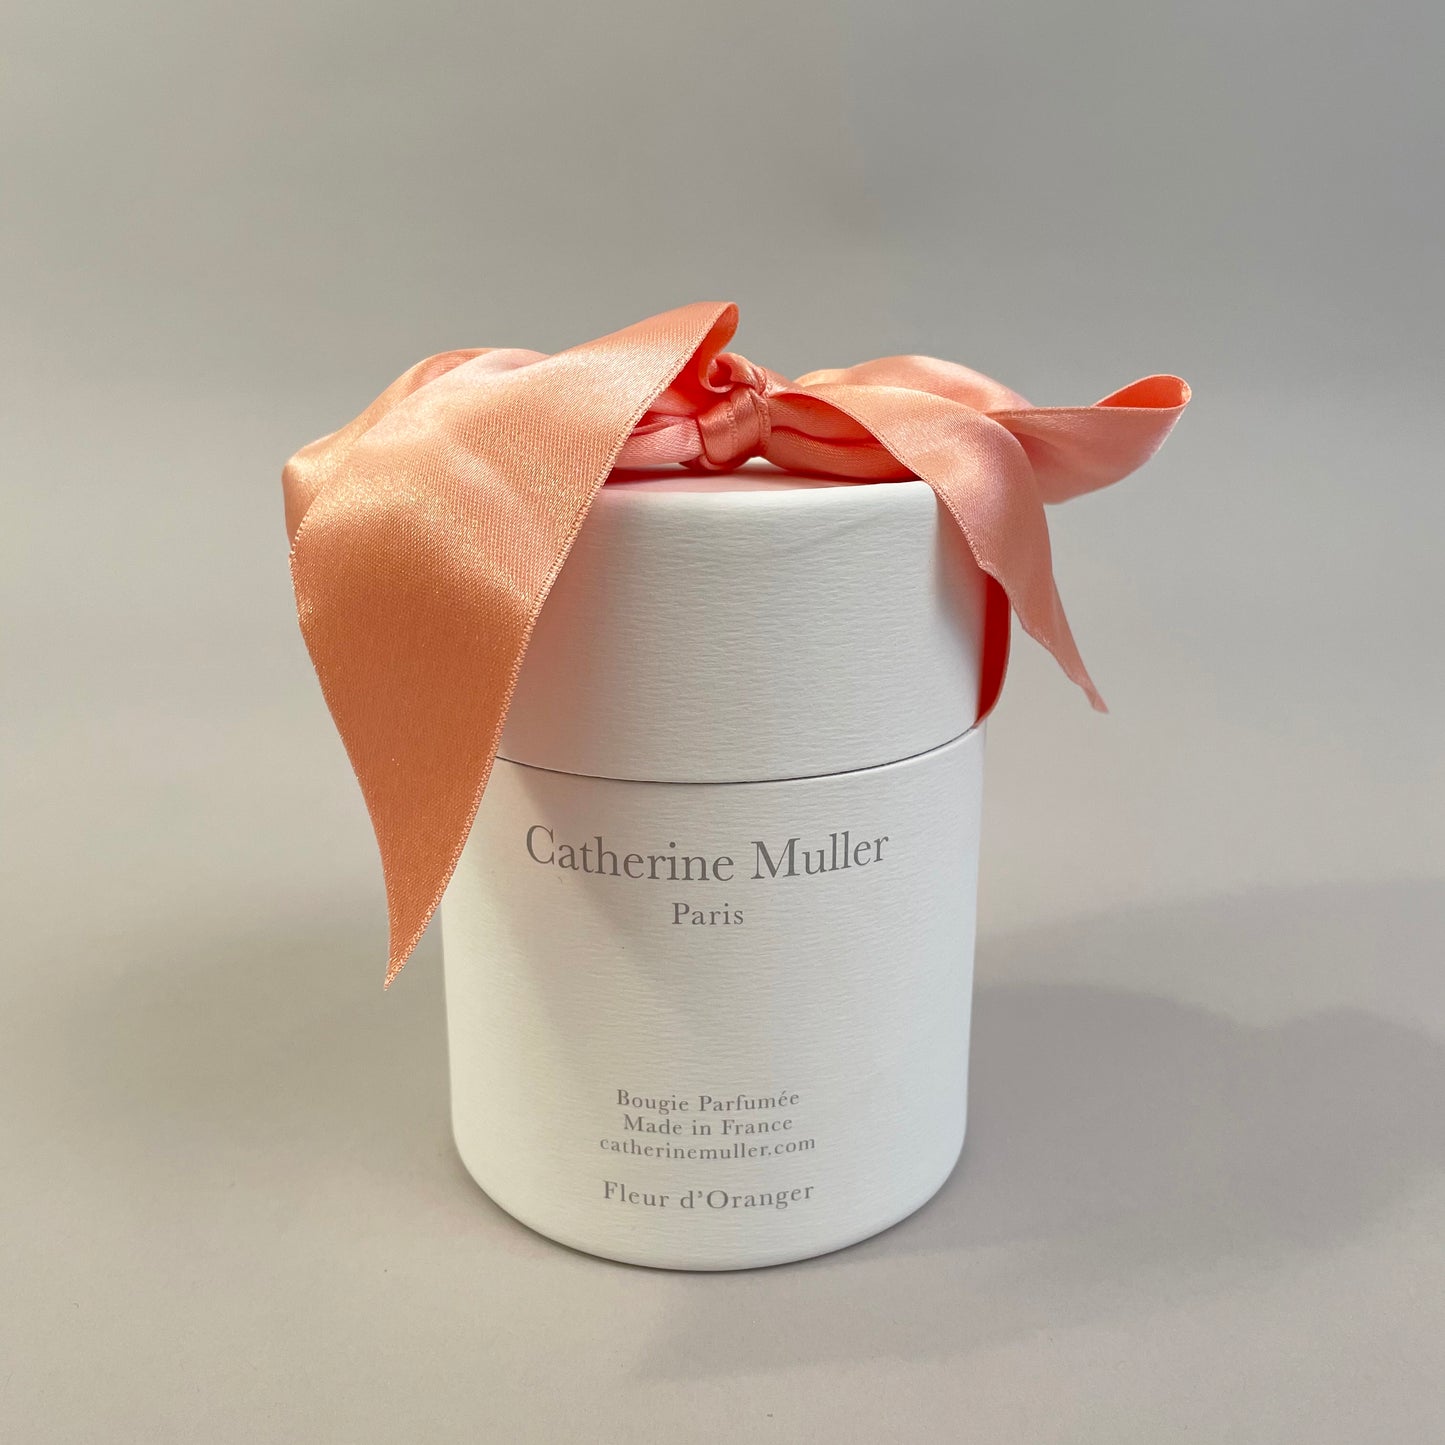 Catherine Muller Candle - Fleur d'Oranger